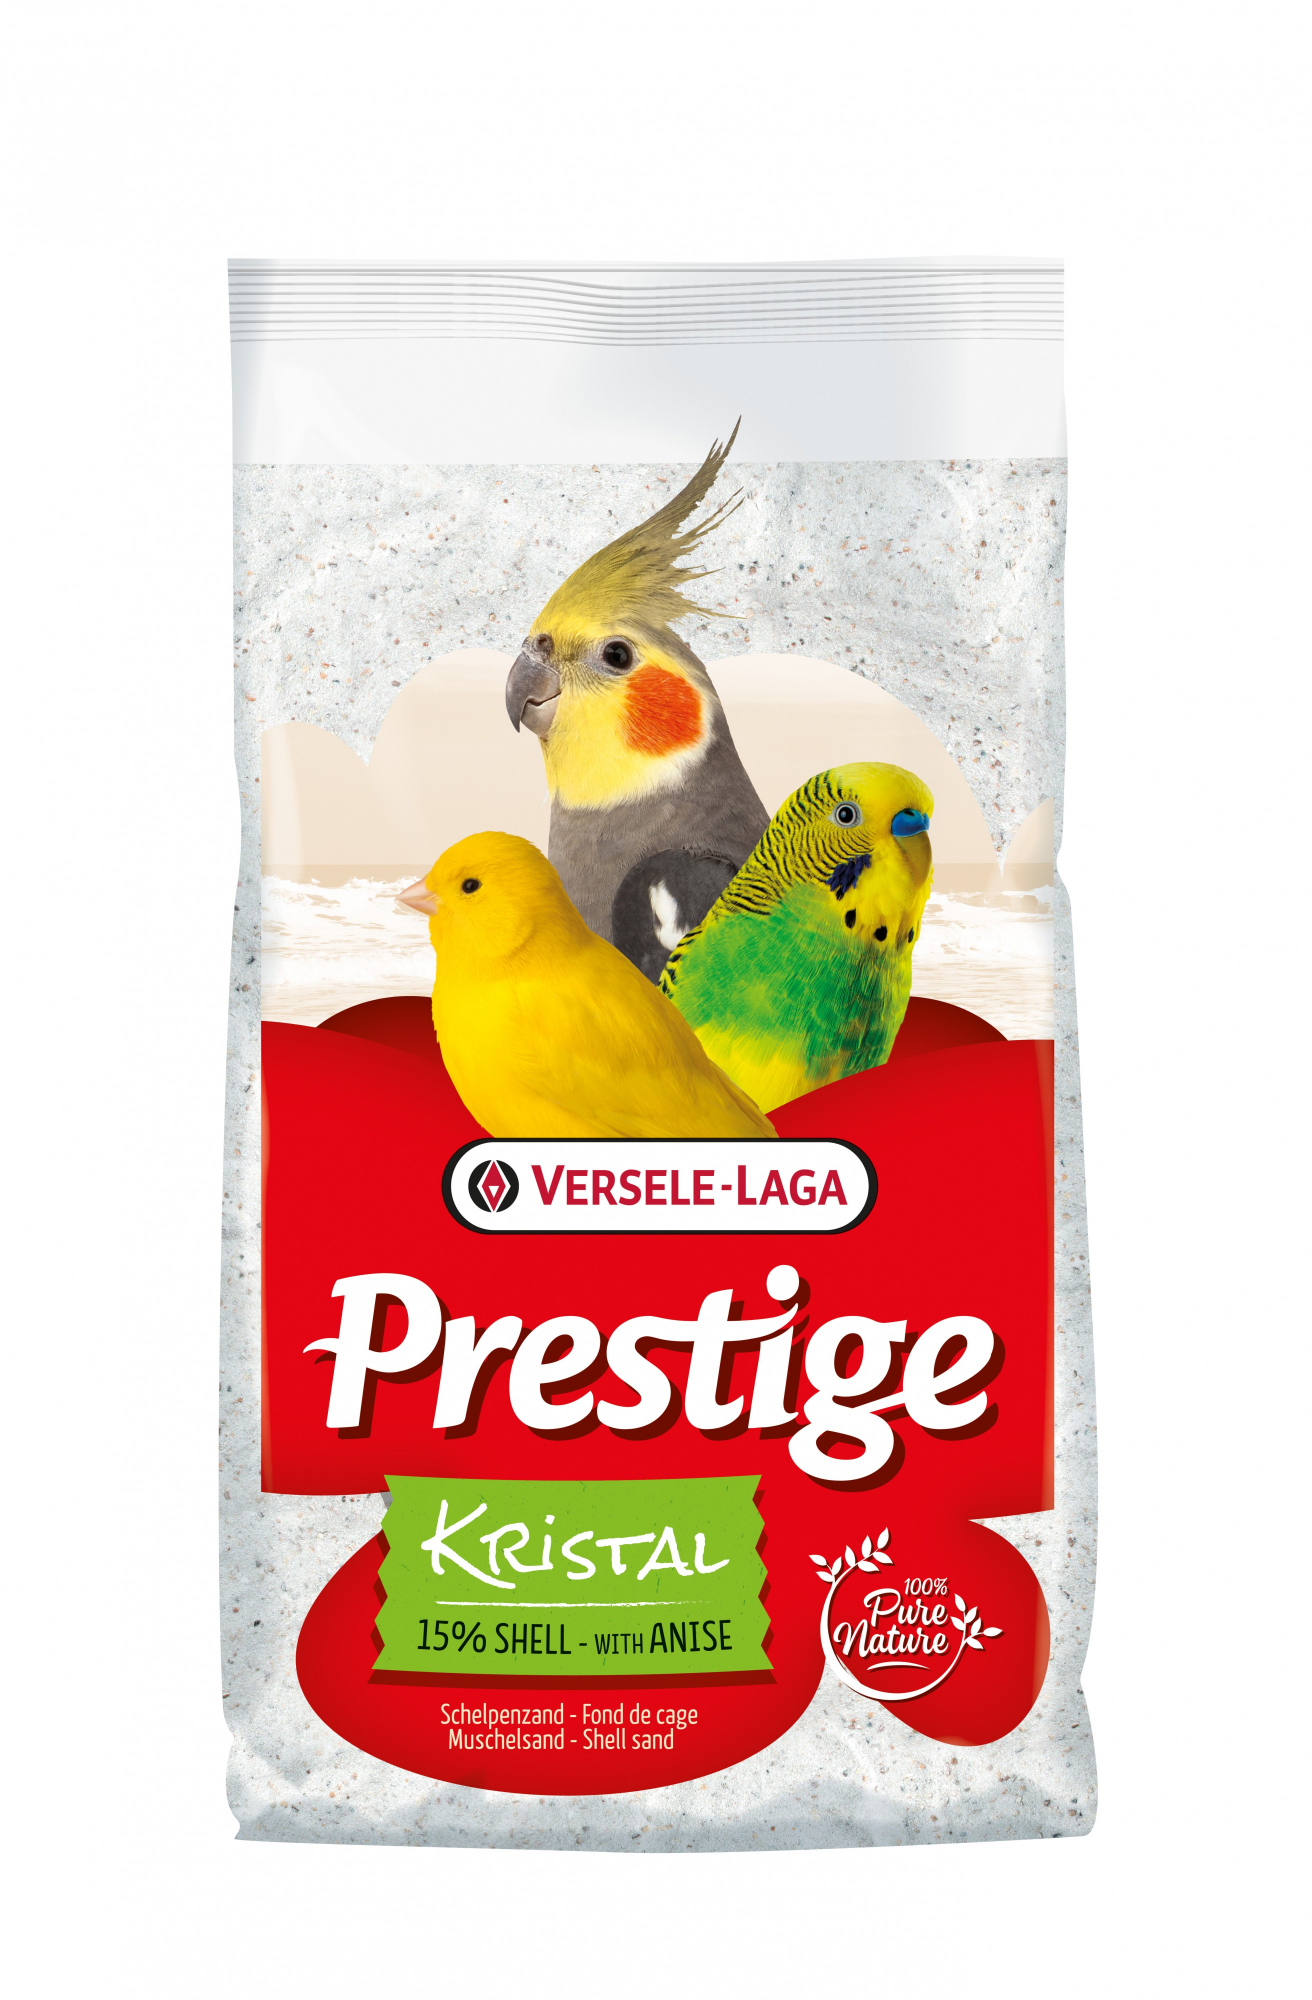 Prestige Kristal - Sabbia bianca per cassetta igienica, con il 15% di gusci